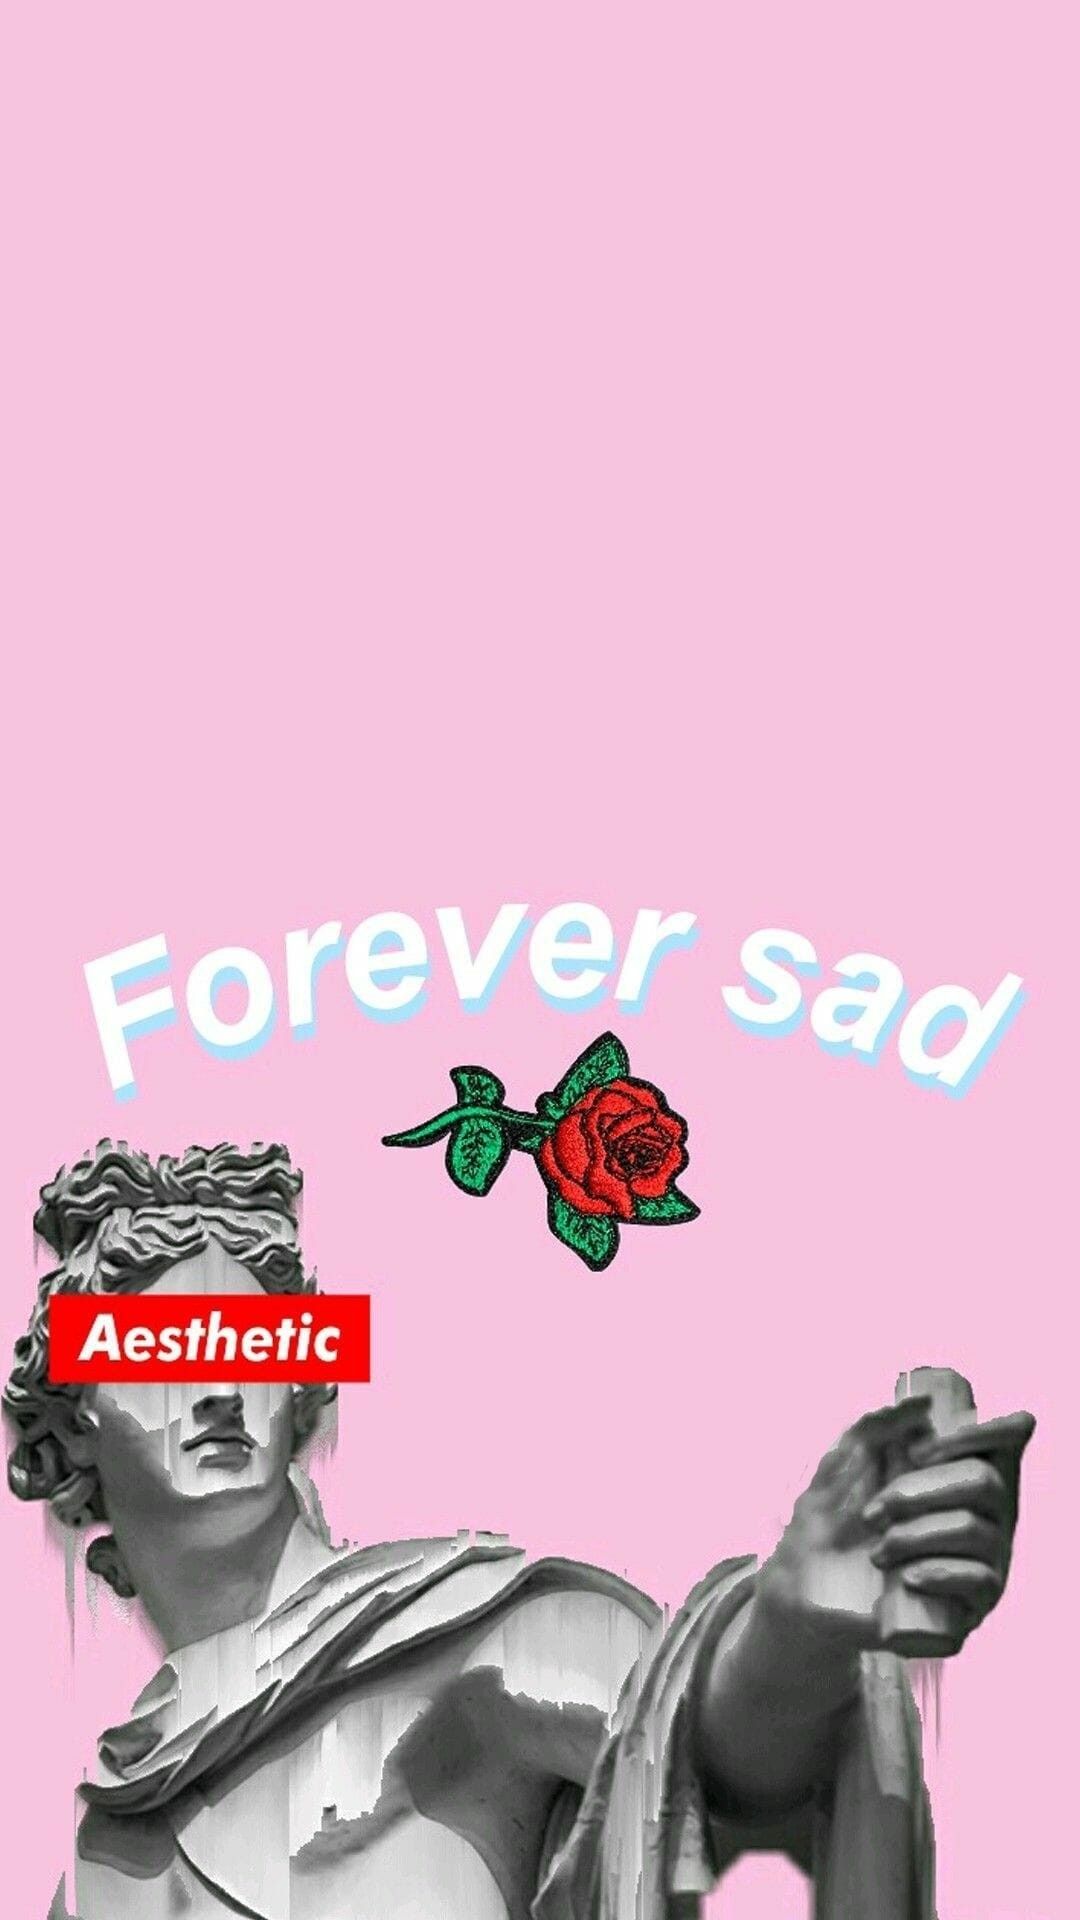 Forever sad aesthetic wallpaper for phone and desktop. - Depressing, Greek statue, sad, depression